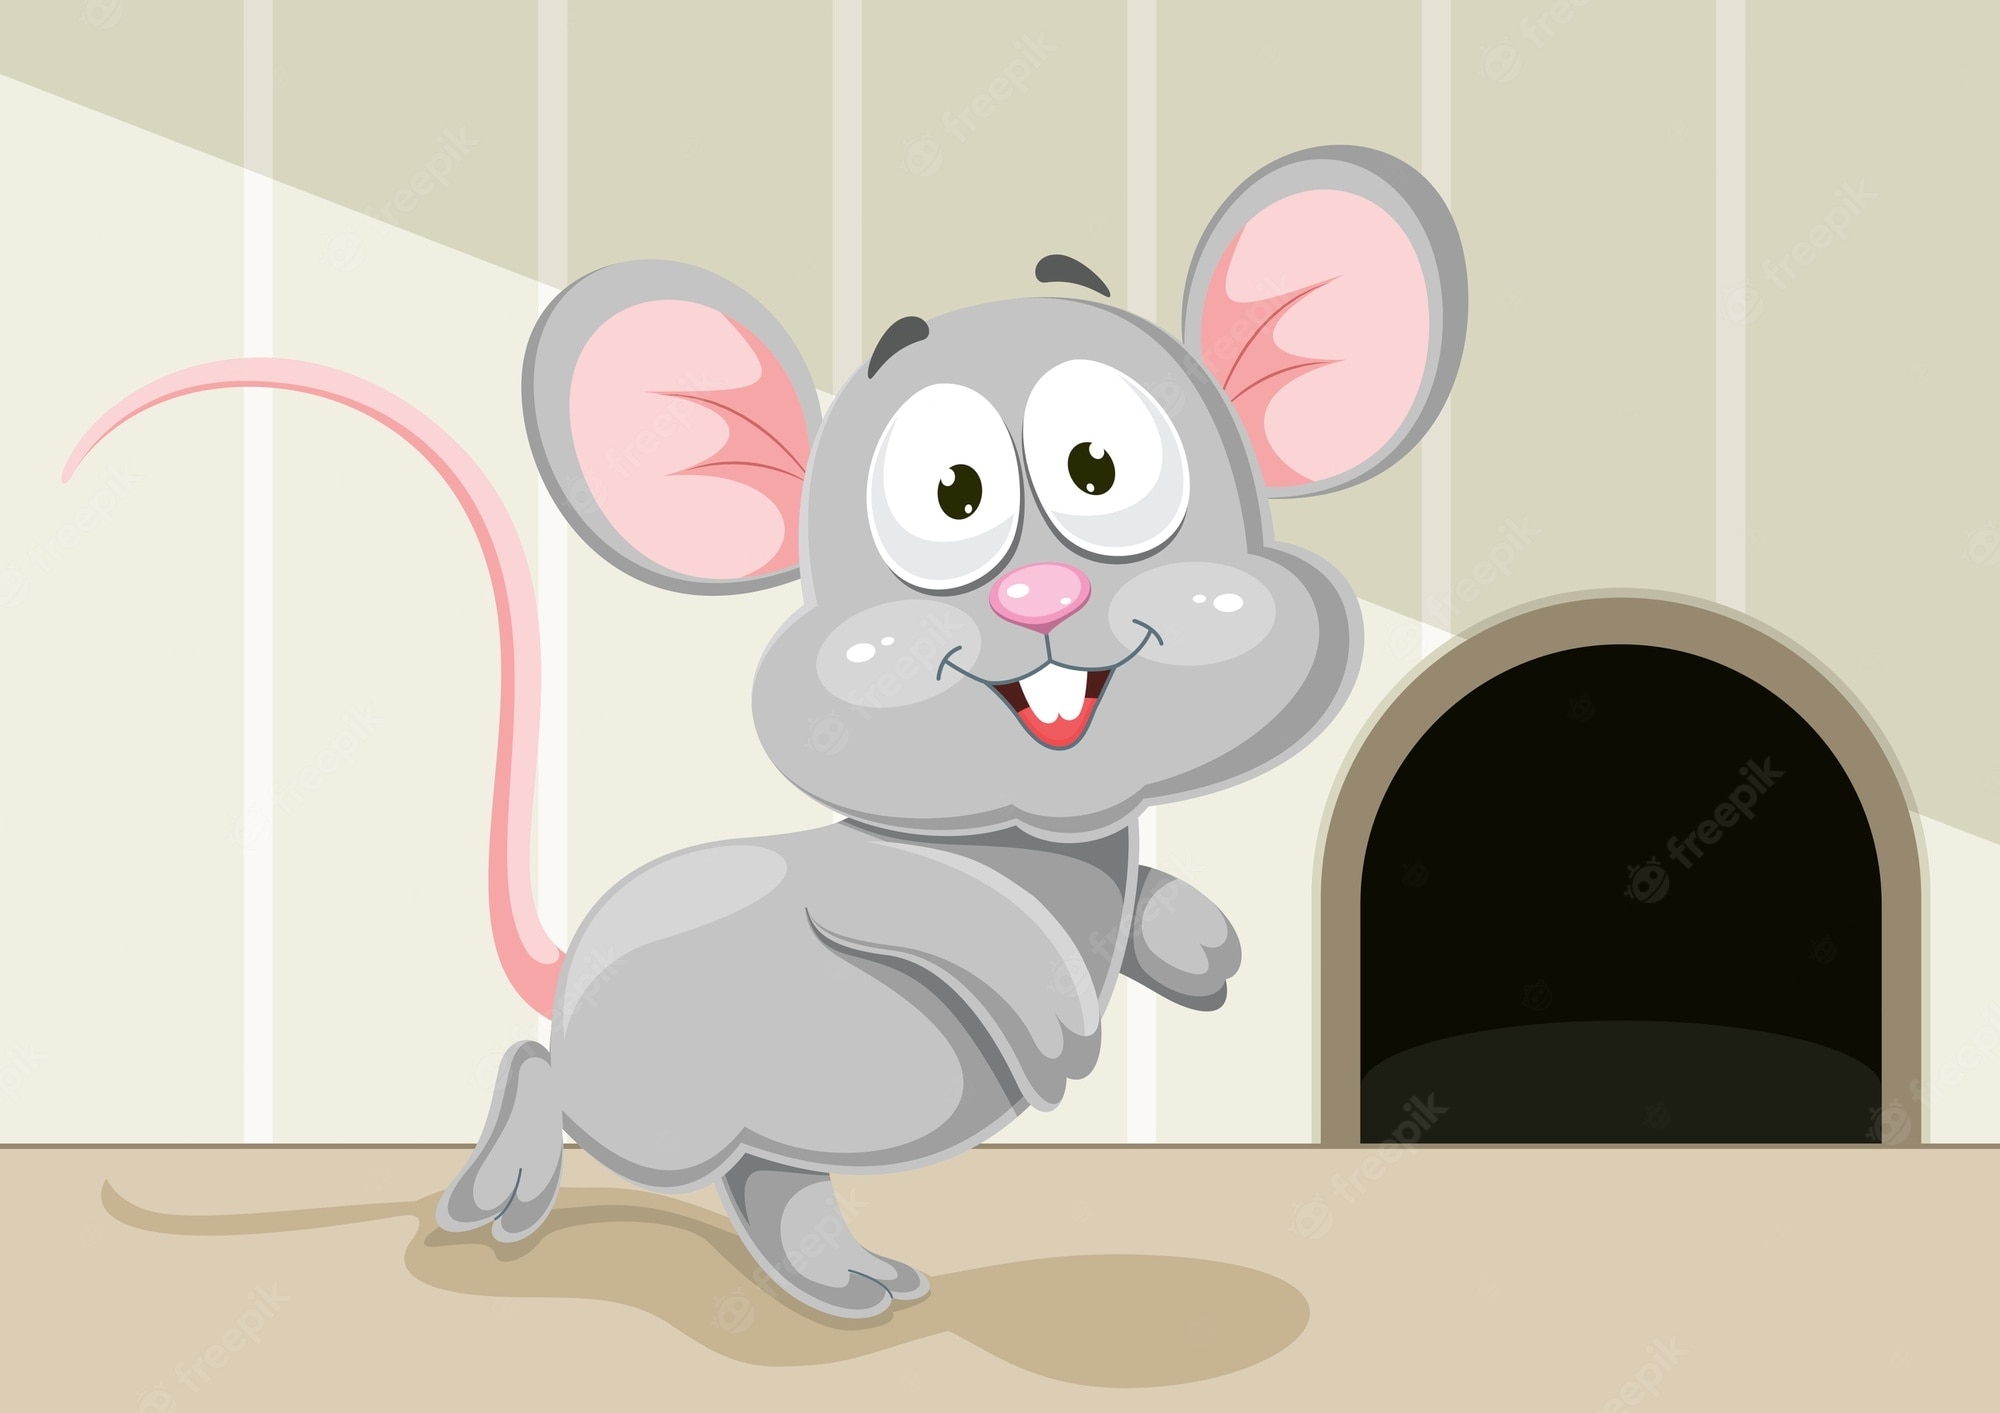 Включи мышонок идет в детский садик. Мышонок в норке. Мышка в норке рисование. Норка мышей для детей. Мышка в норке иллюстрация.